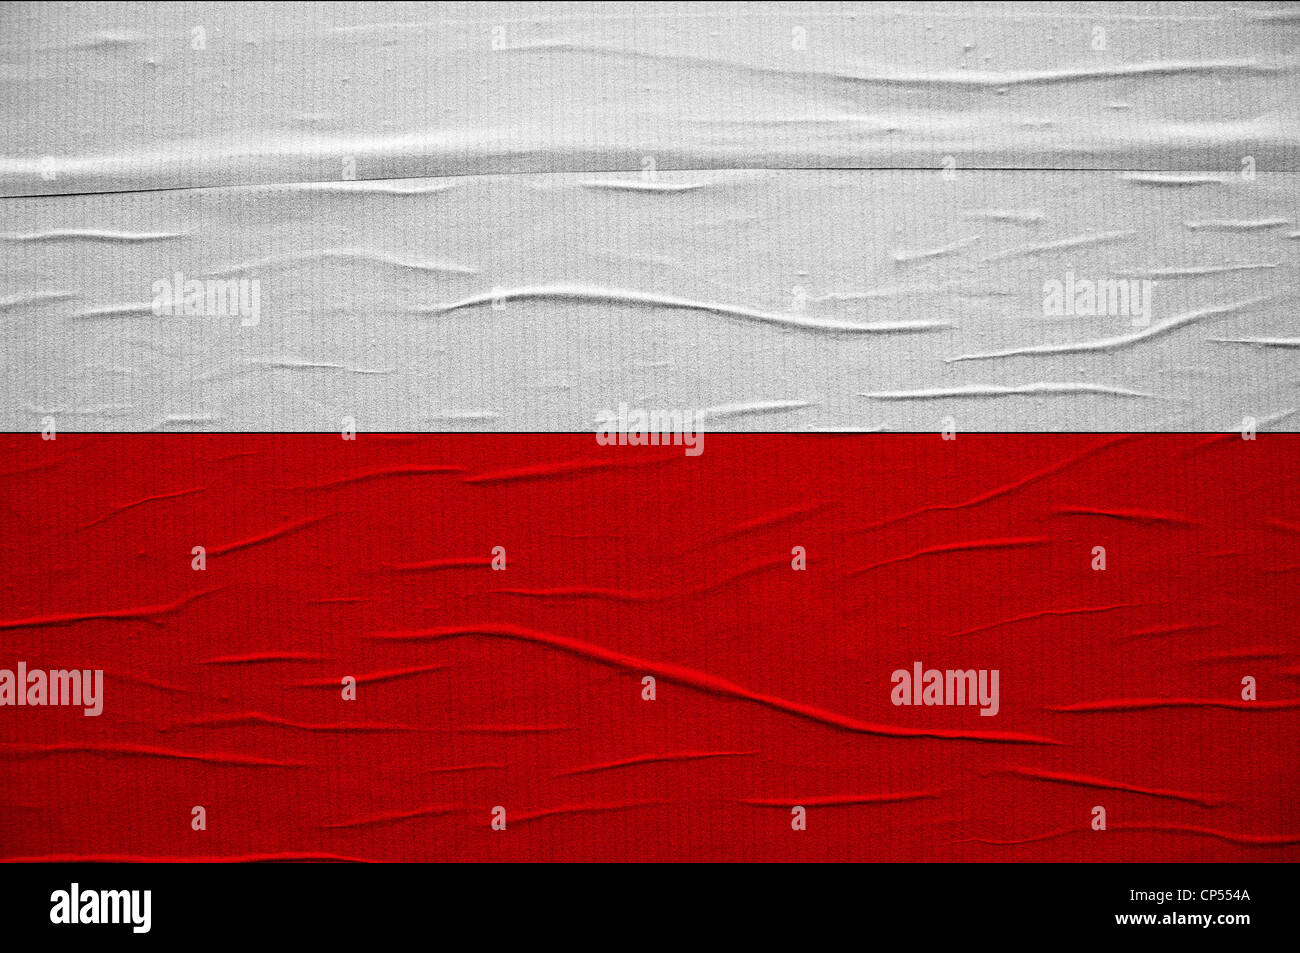 Grunge drapeau polonais, l'image est une superposition de texture grunge détaillées Banque D'Images